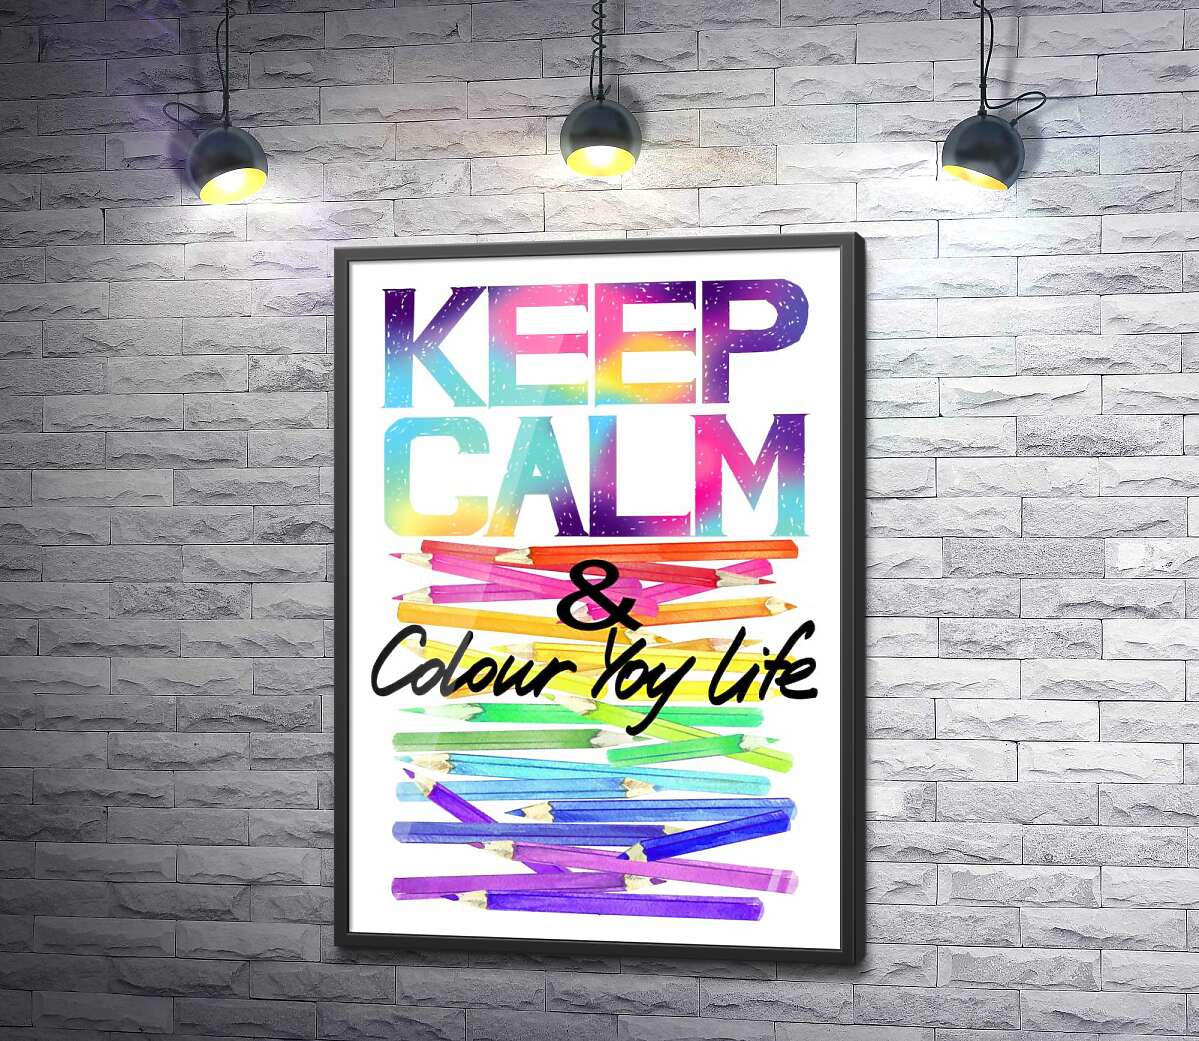 постер Радужные карандаши с надписью "keep calm and colour your life"